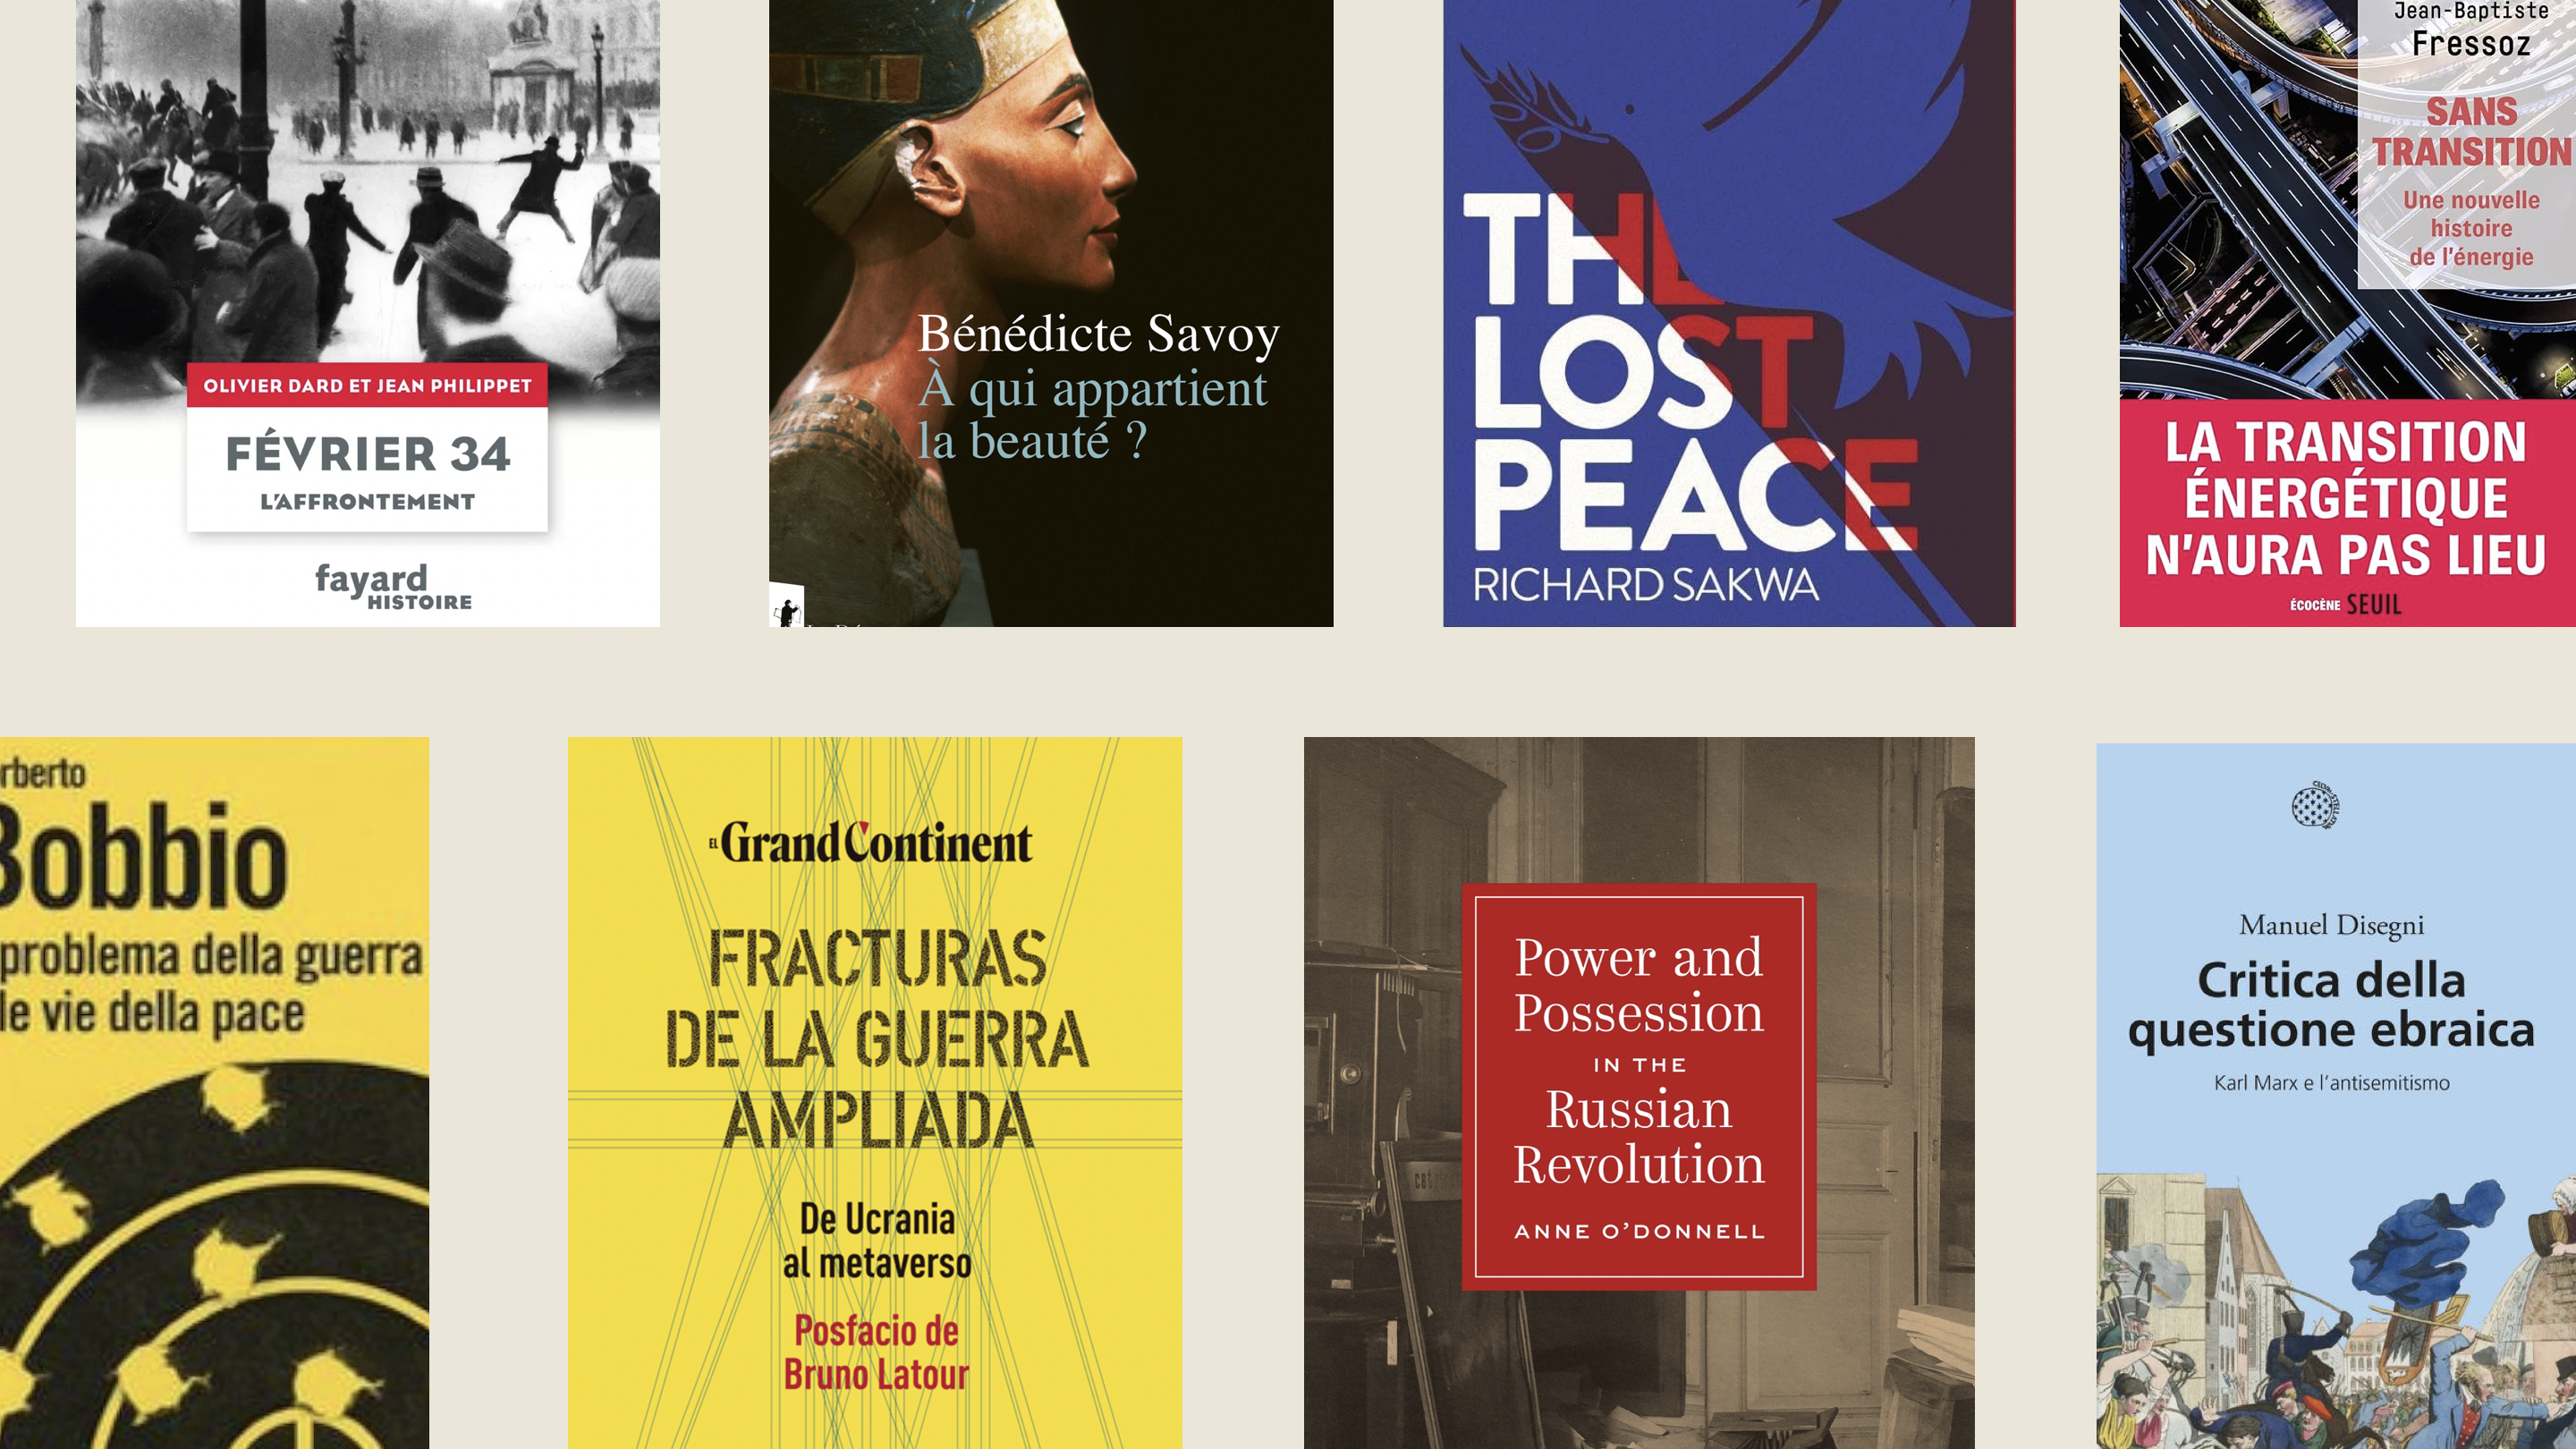 Análisis del libro más leído en España: Datos y tendencias